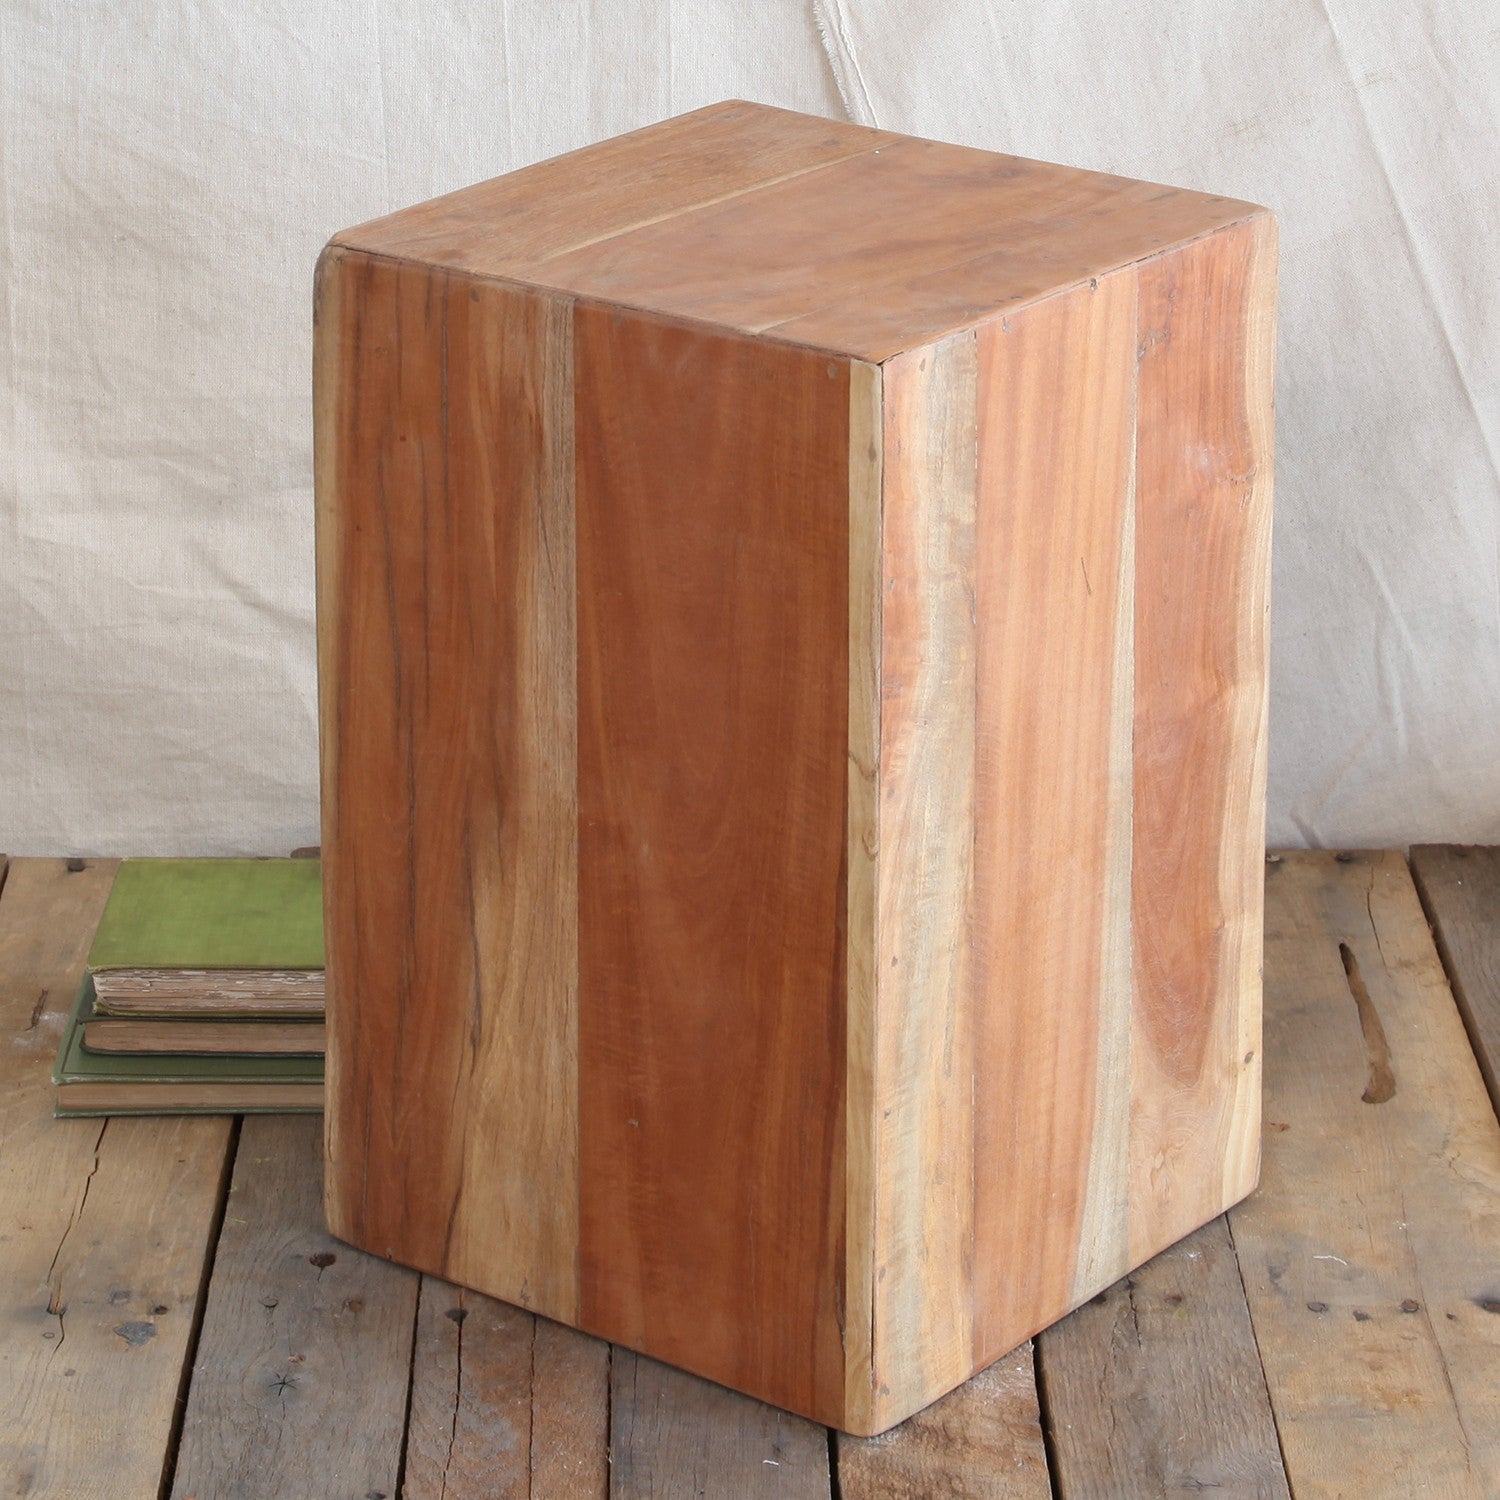 Reclaimed Wood Block Medium